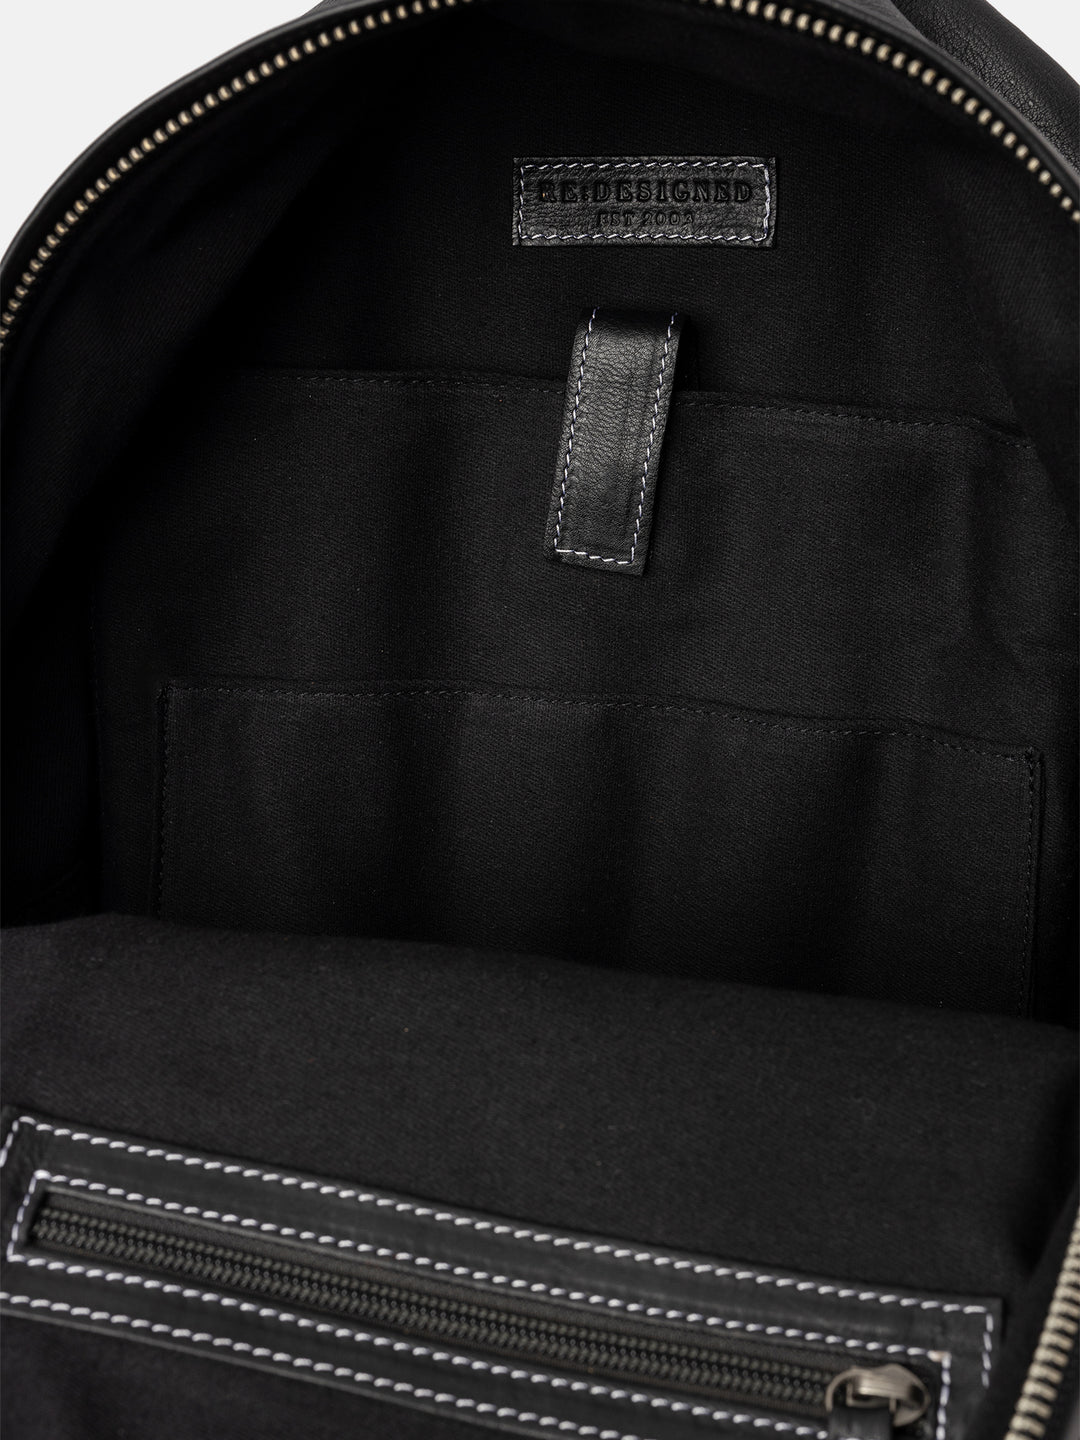 RE:DESIGNED EST 2003 Flanagan Backpack Black